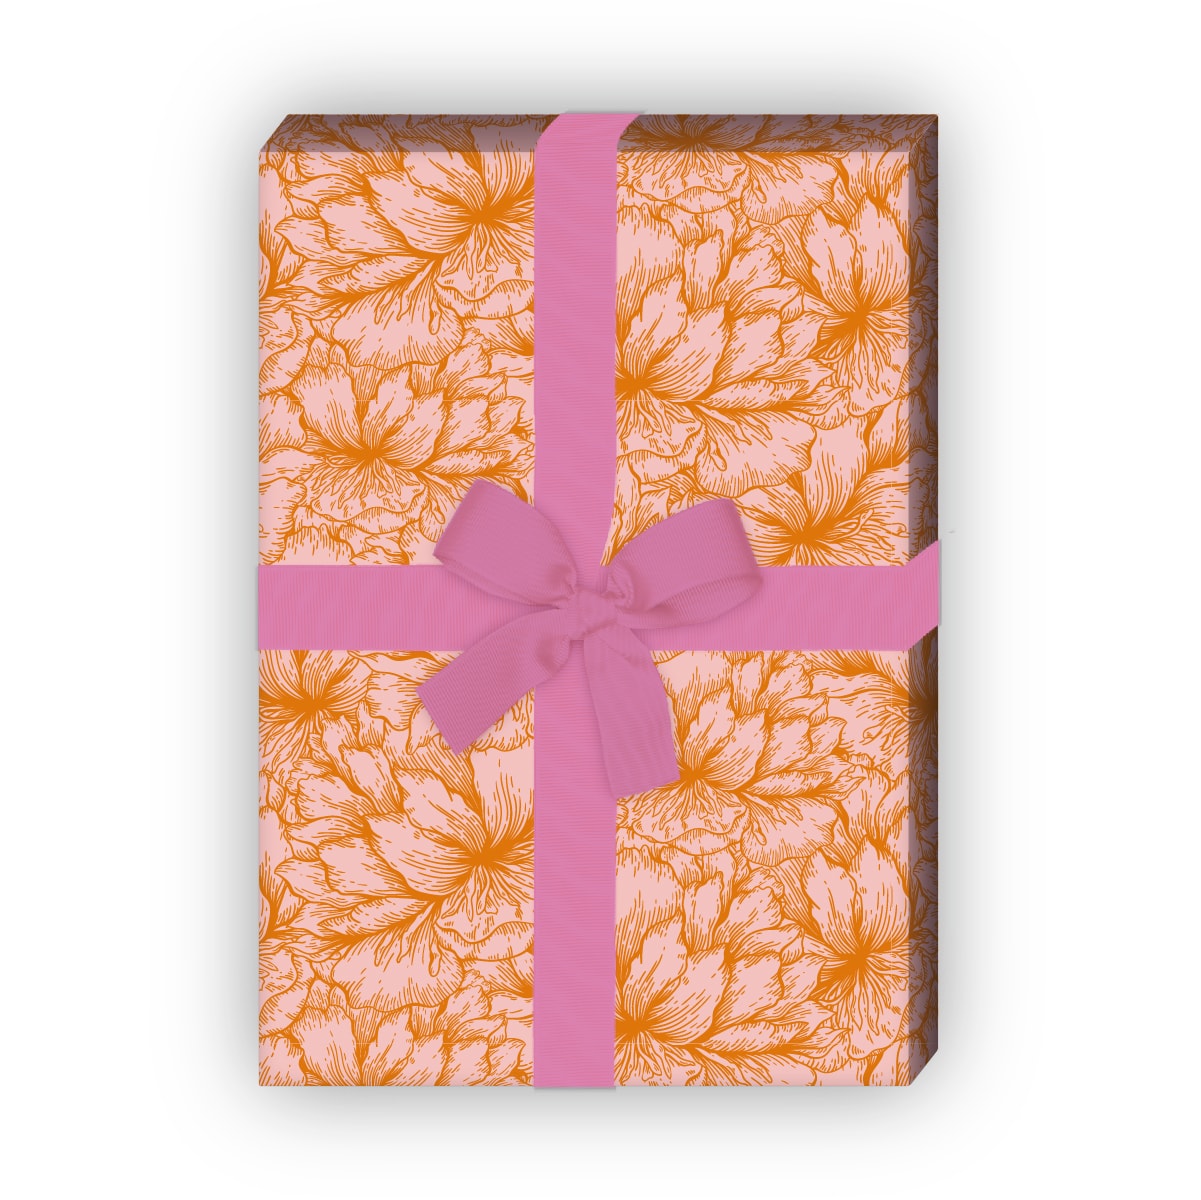 Kartenkaufrausch: Florales Geschenkpapier mit üppigen aus unserer florale Papeterie in orange